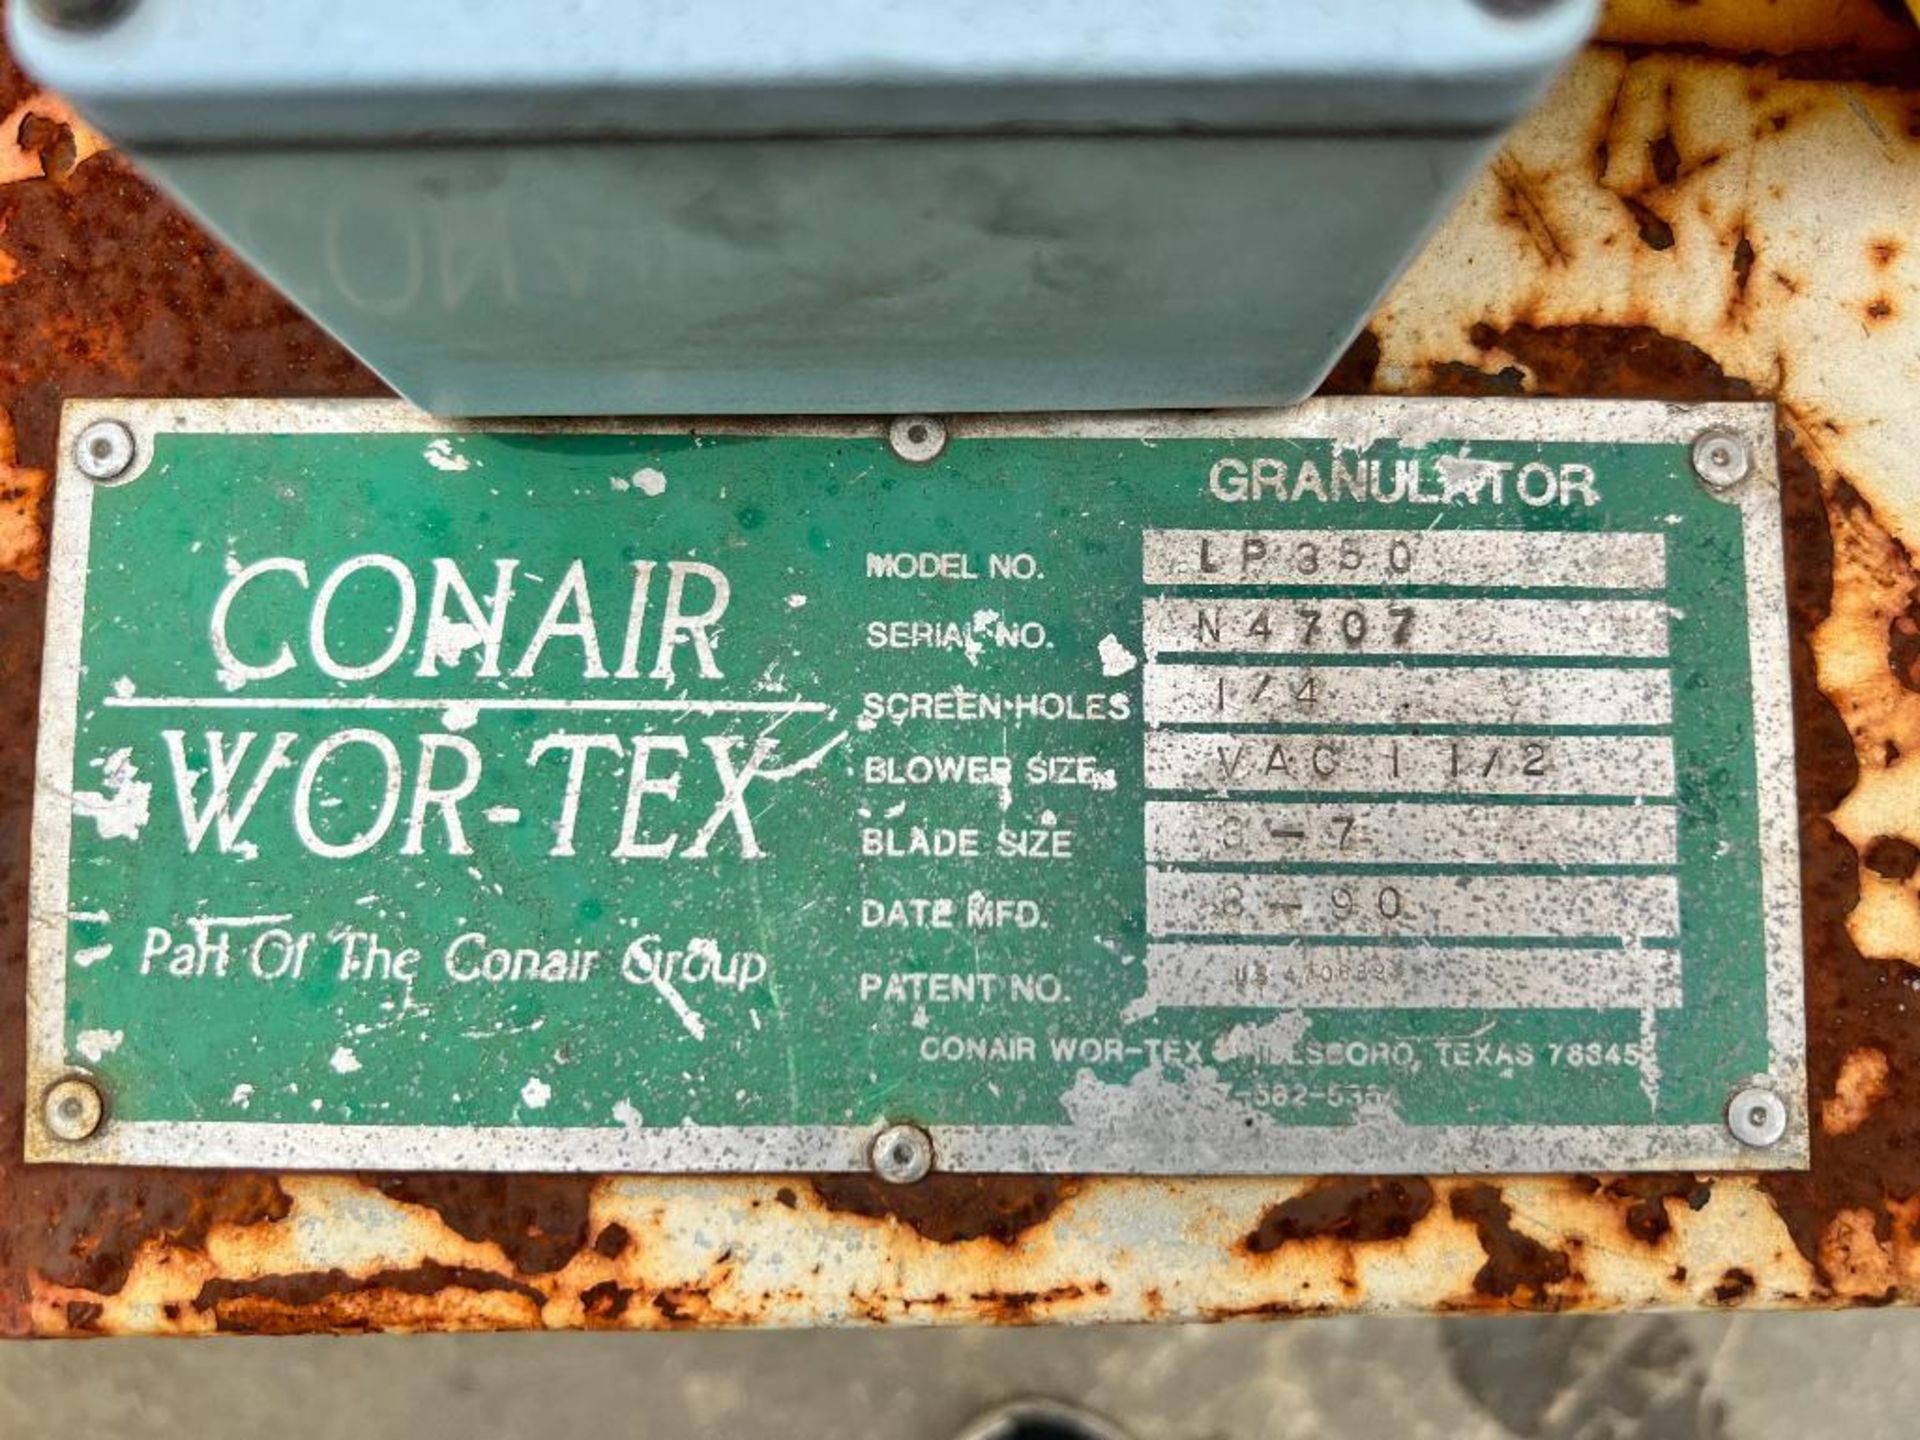 CONAIR WOR-TEX GRANULATOR, LP350 - Image 3 of 3